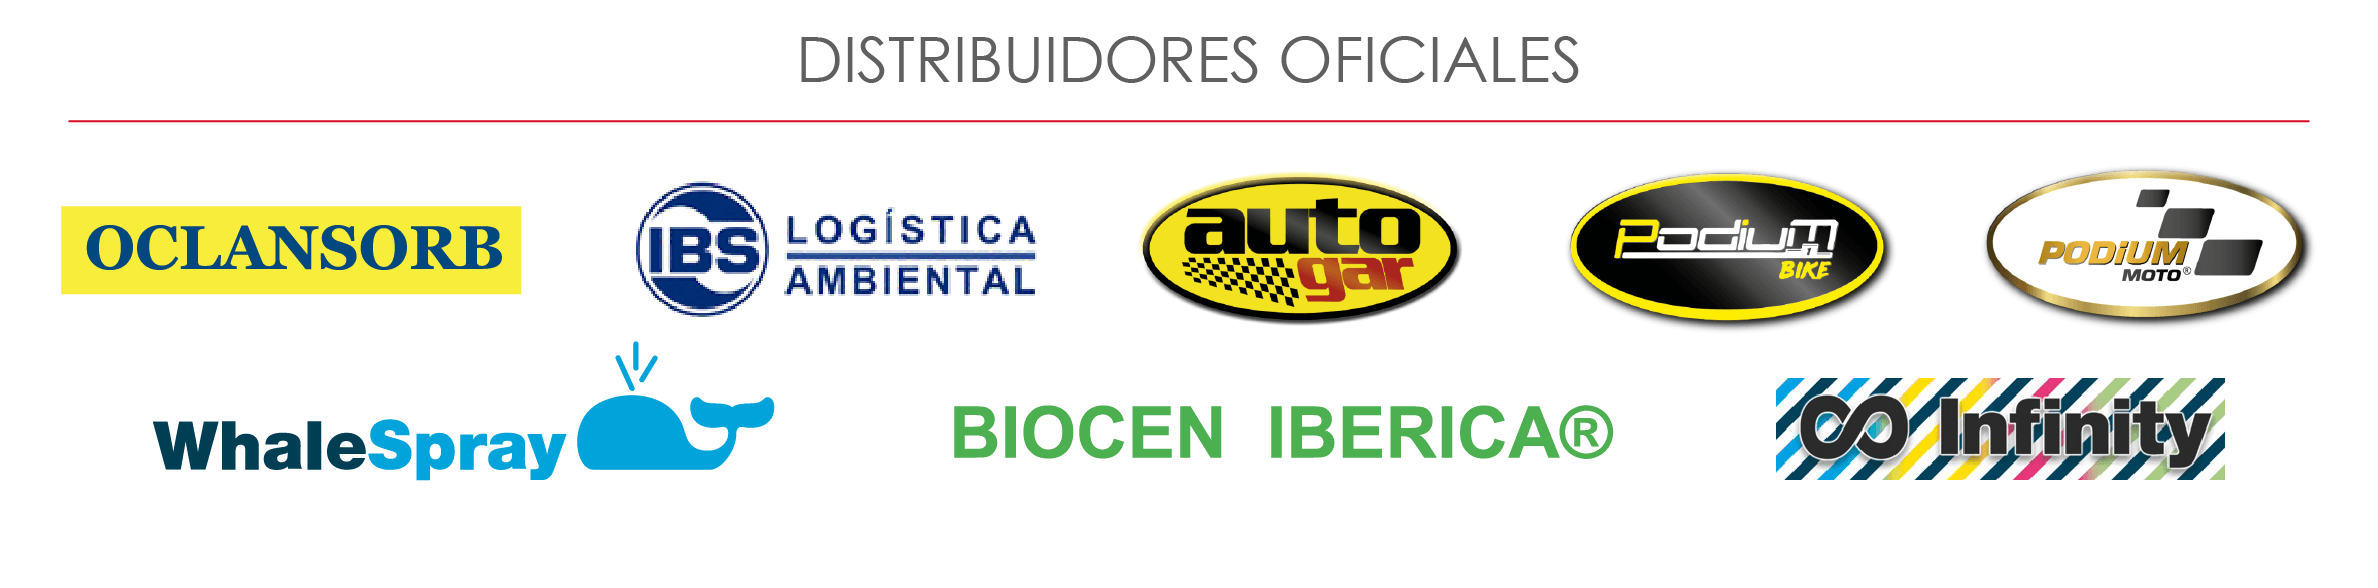 Distribuidores oficiales de autogar,infinity, biocen iberica y Oclansorb